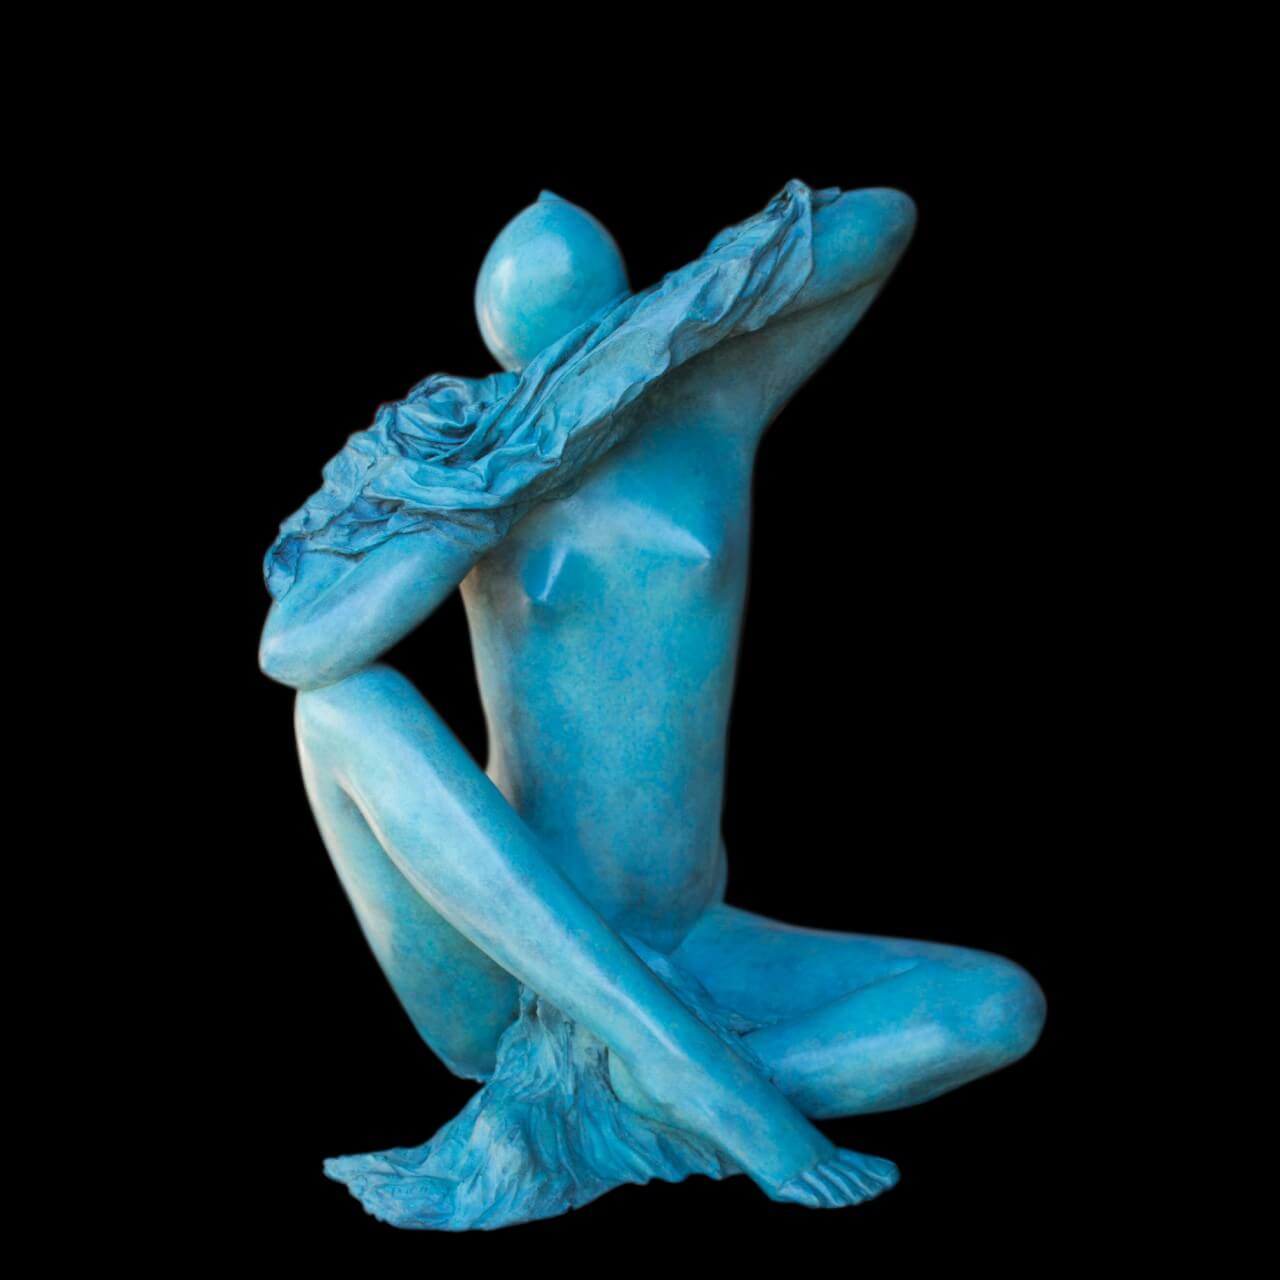 mario pavesi scultore pittore reggio emilia bronzo